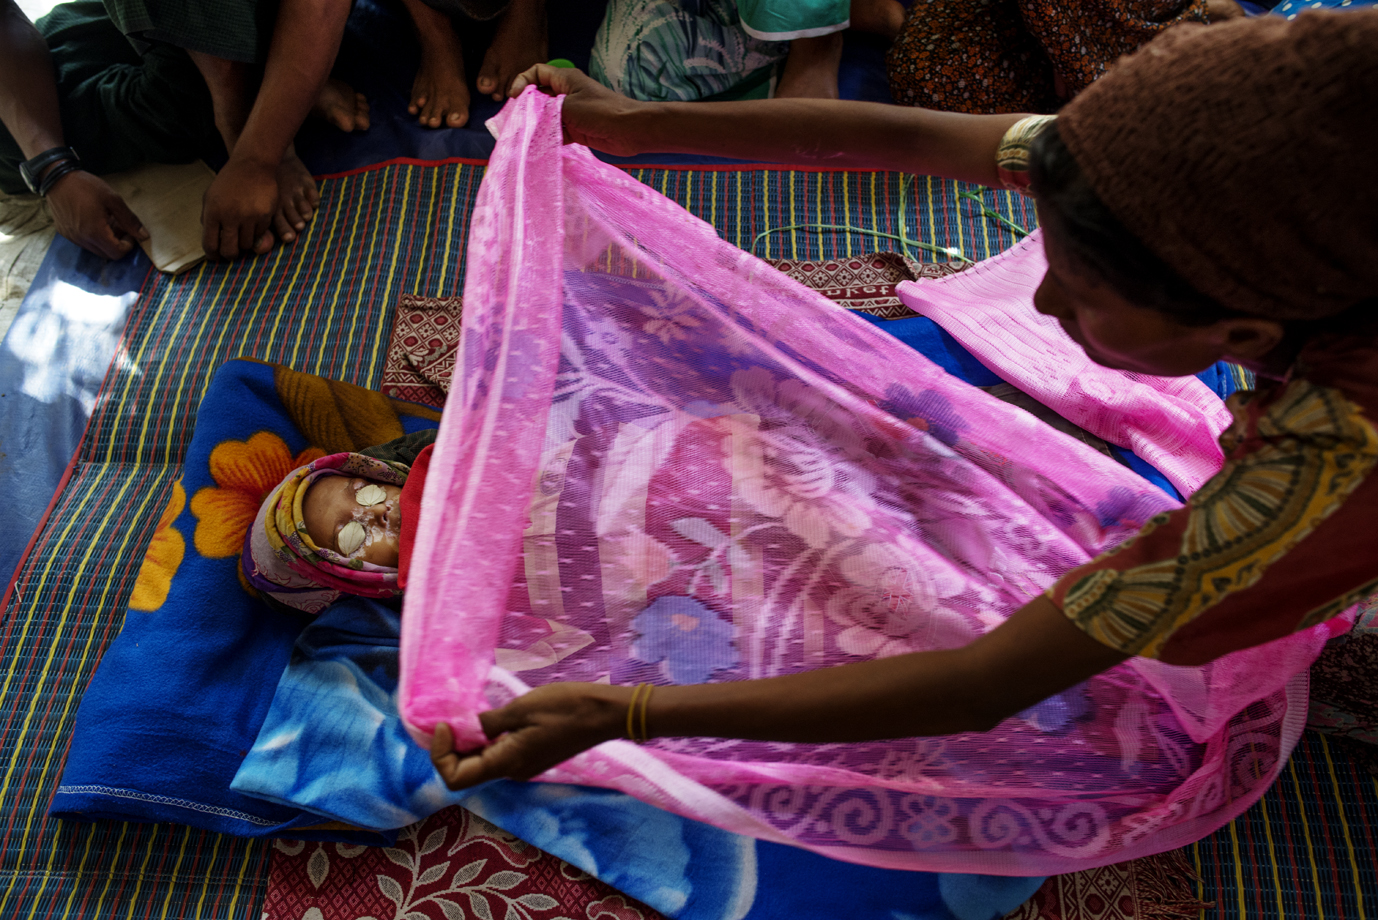  Rohingya mother sweeps a blanket over her deceased son, Sittwe, Rakhine / Burma - 2013 